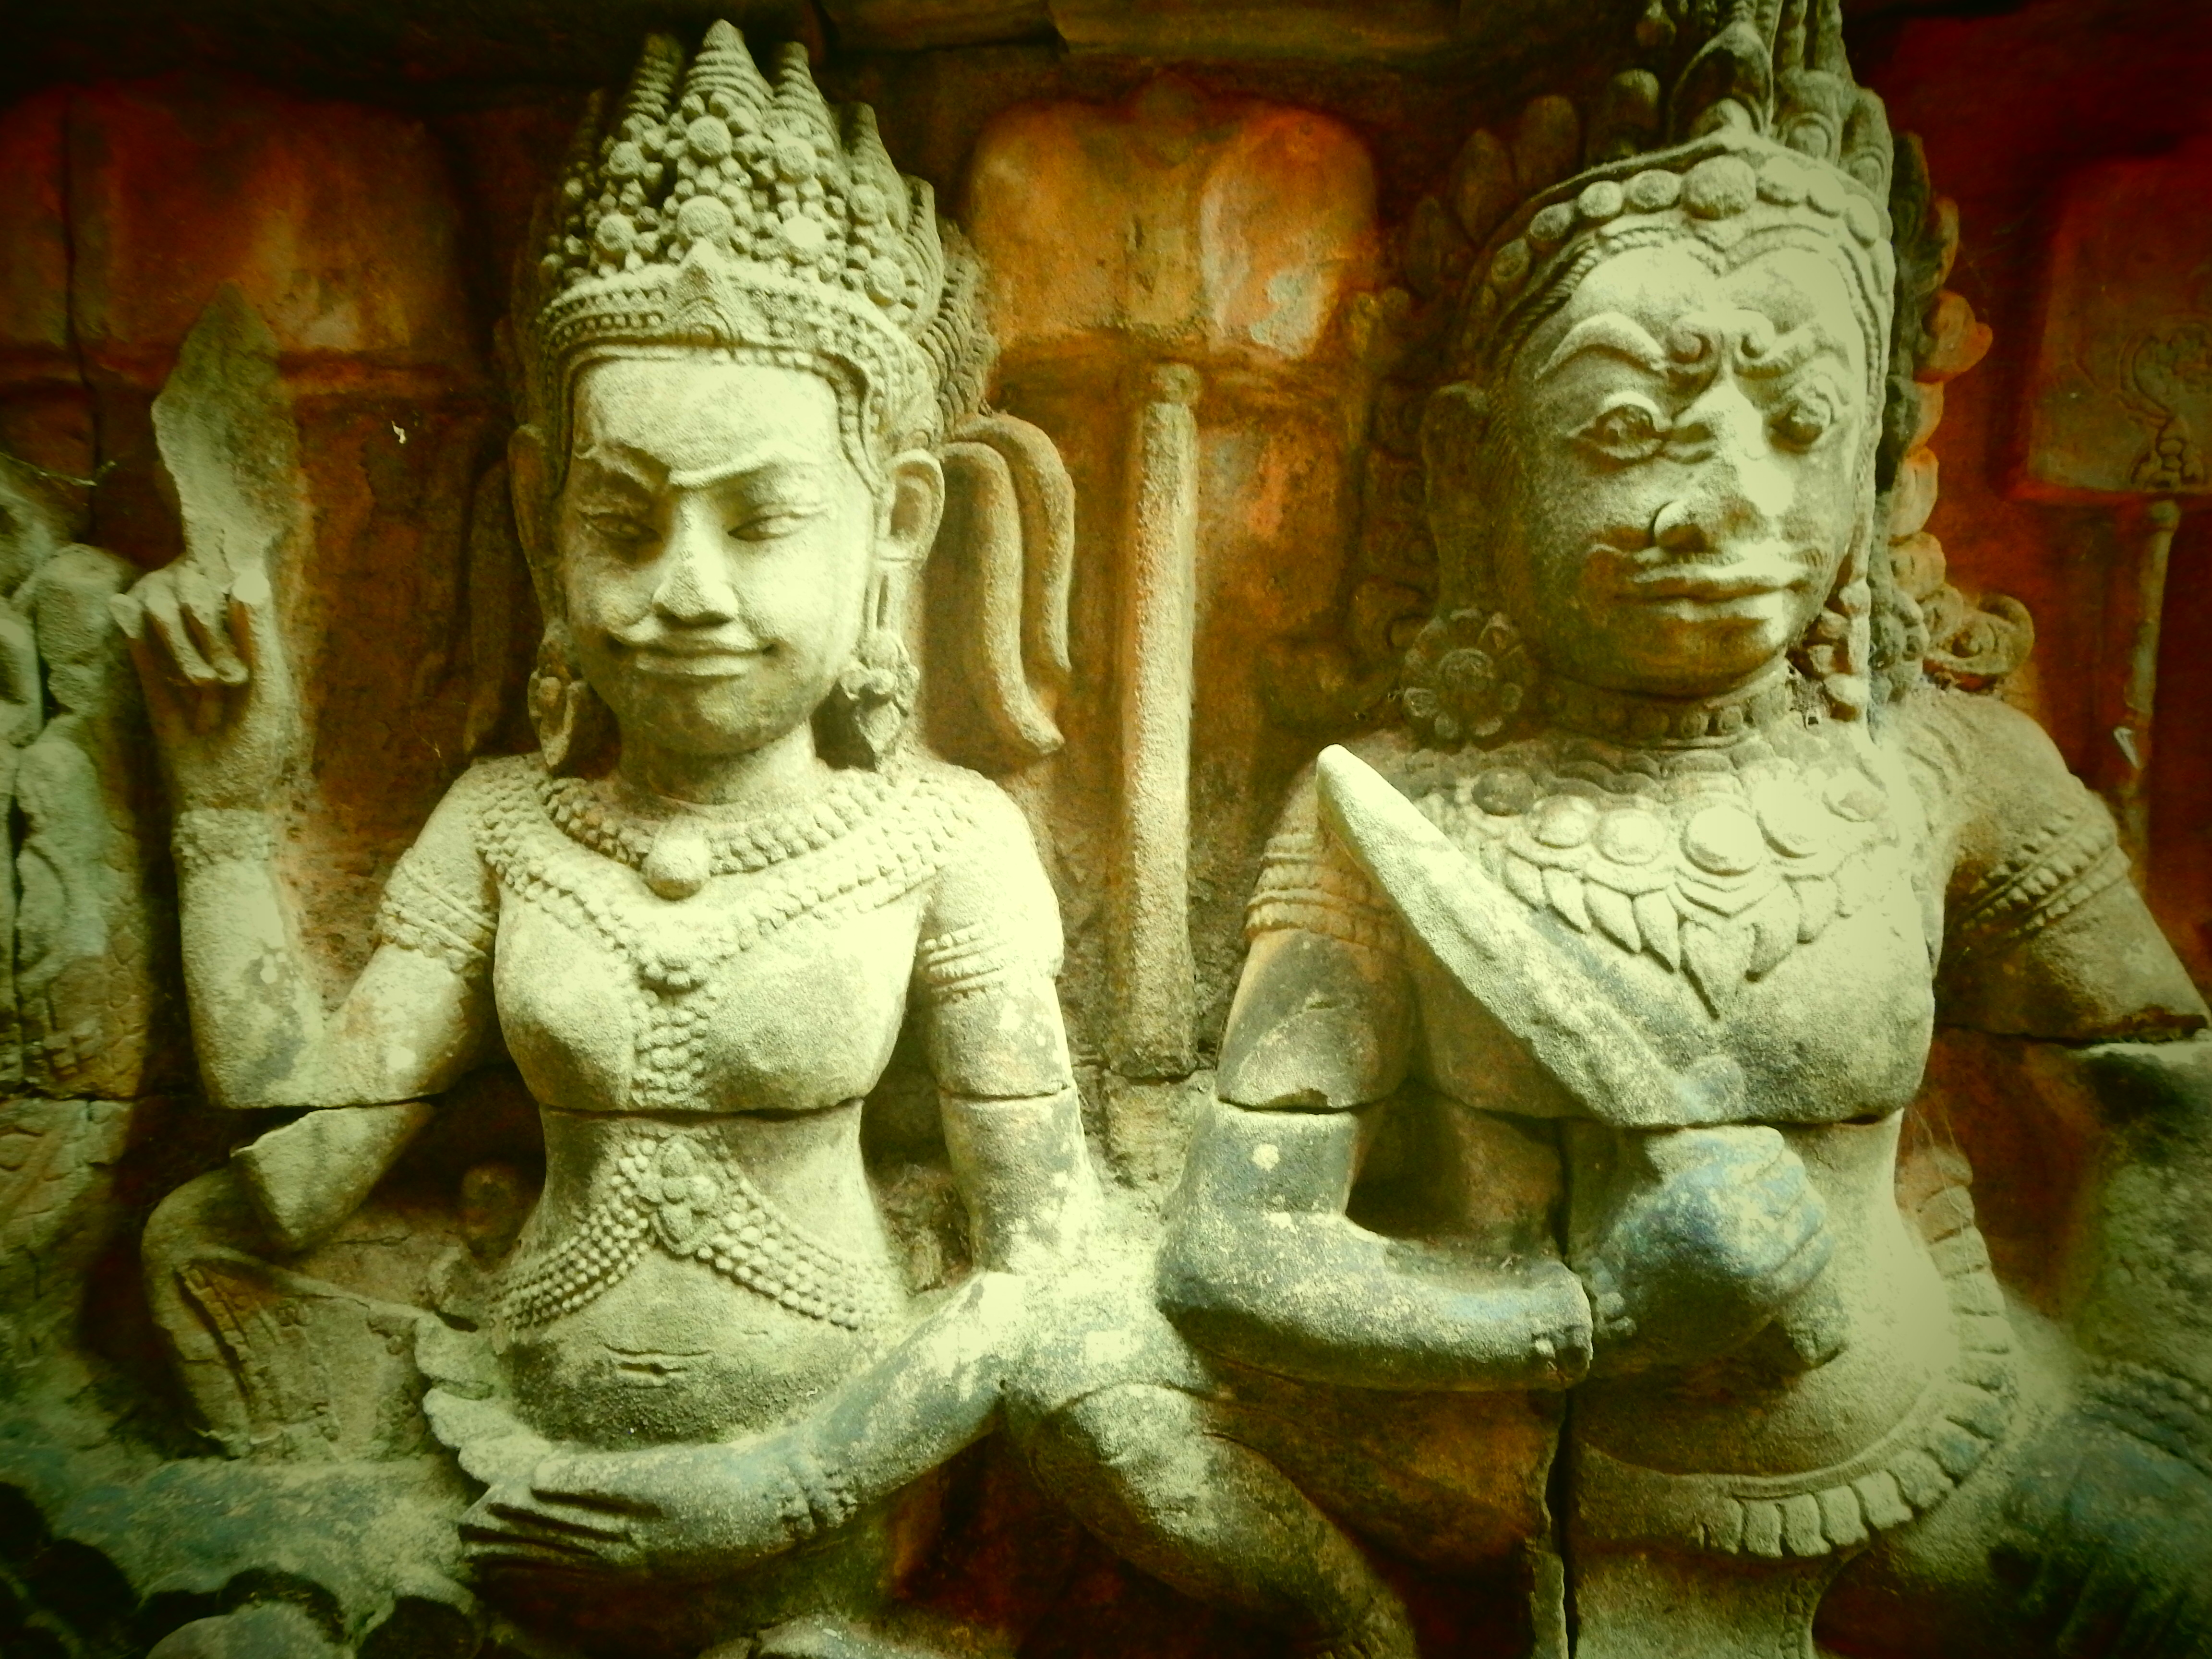 The gods of Angkor, Cambodia